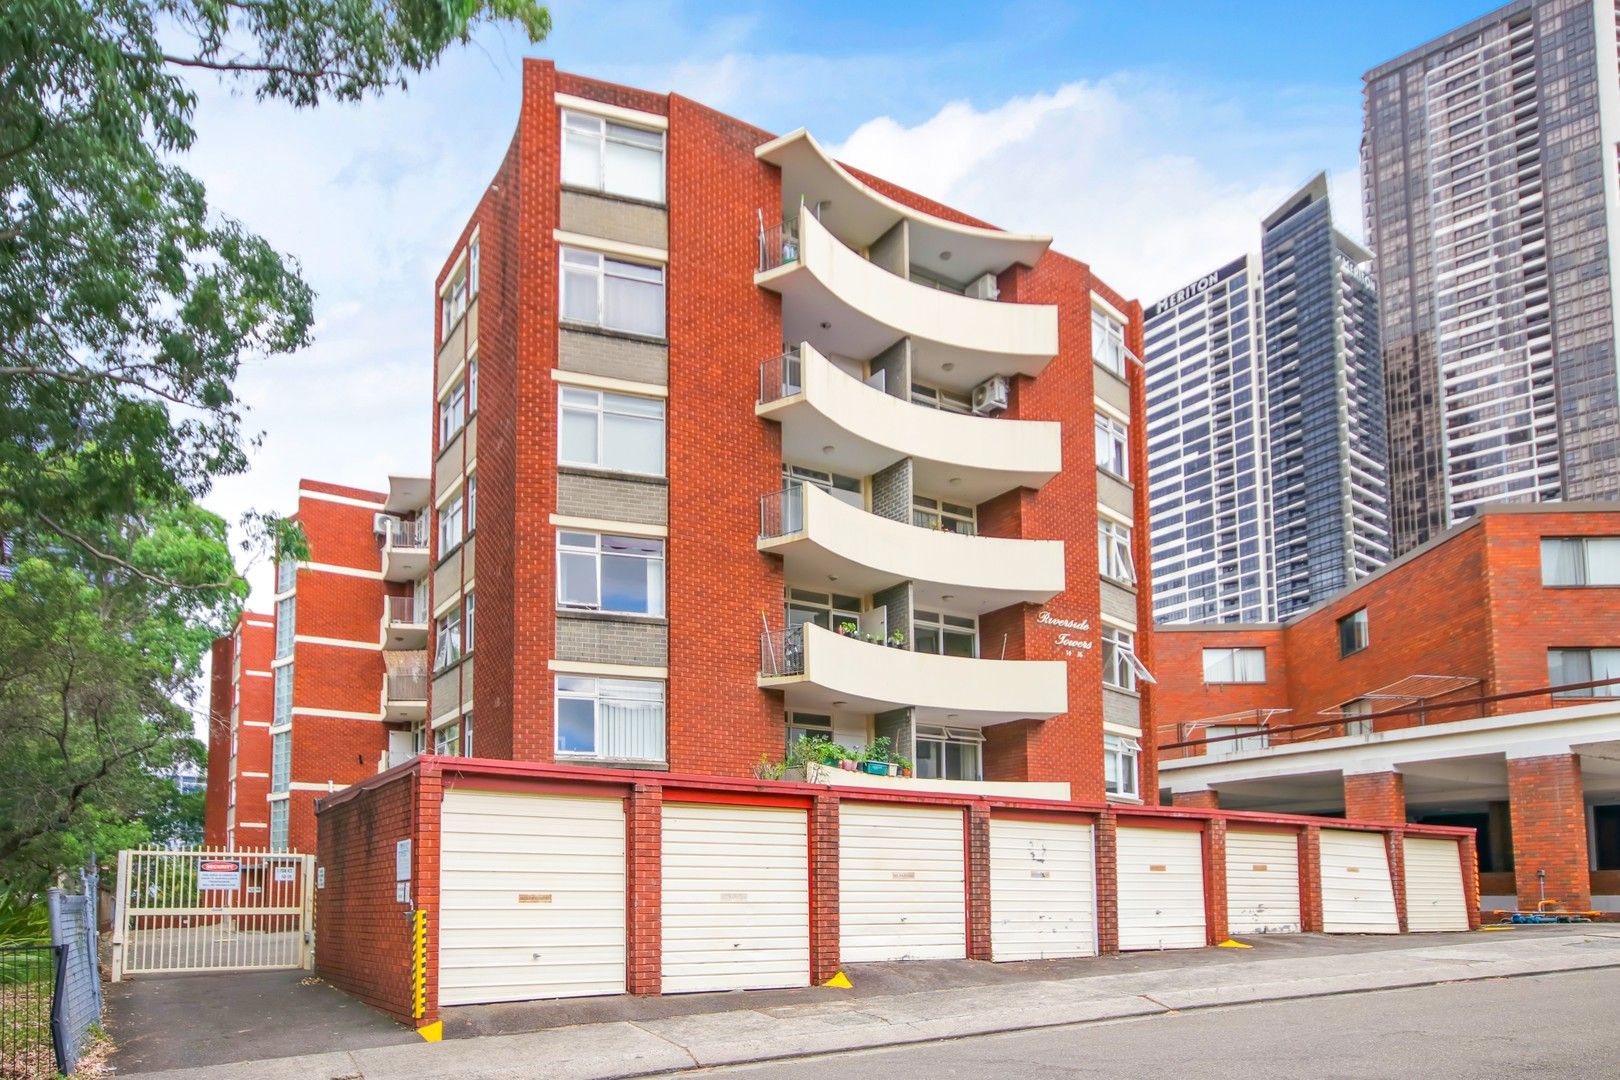 2 bedrooms House in 38/14-16 lamont Street PARRAMATTA NSW, 2150